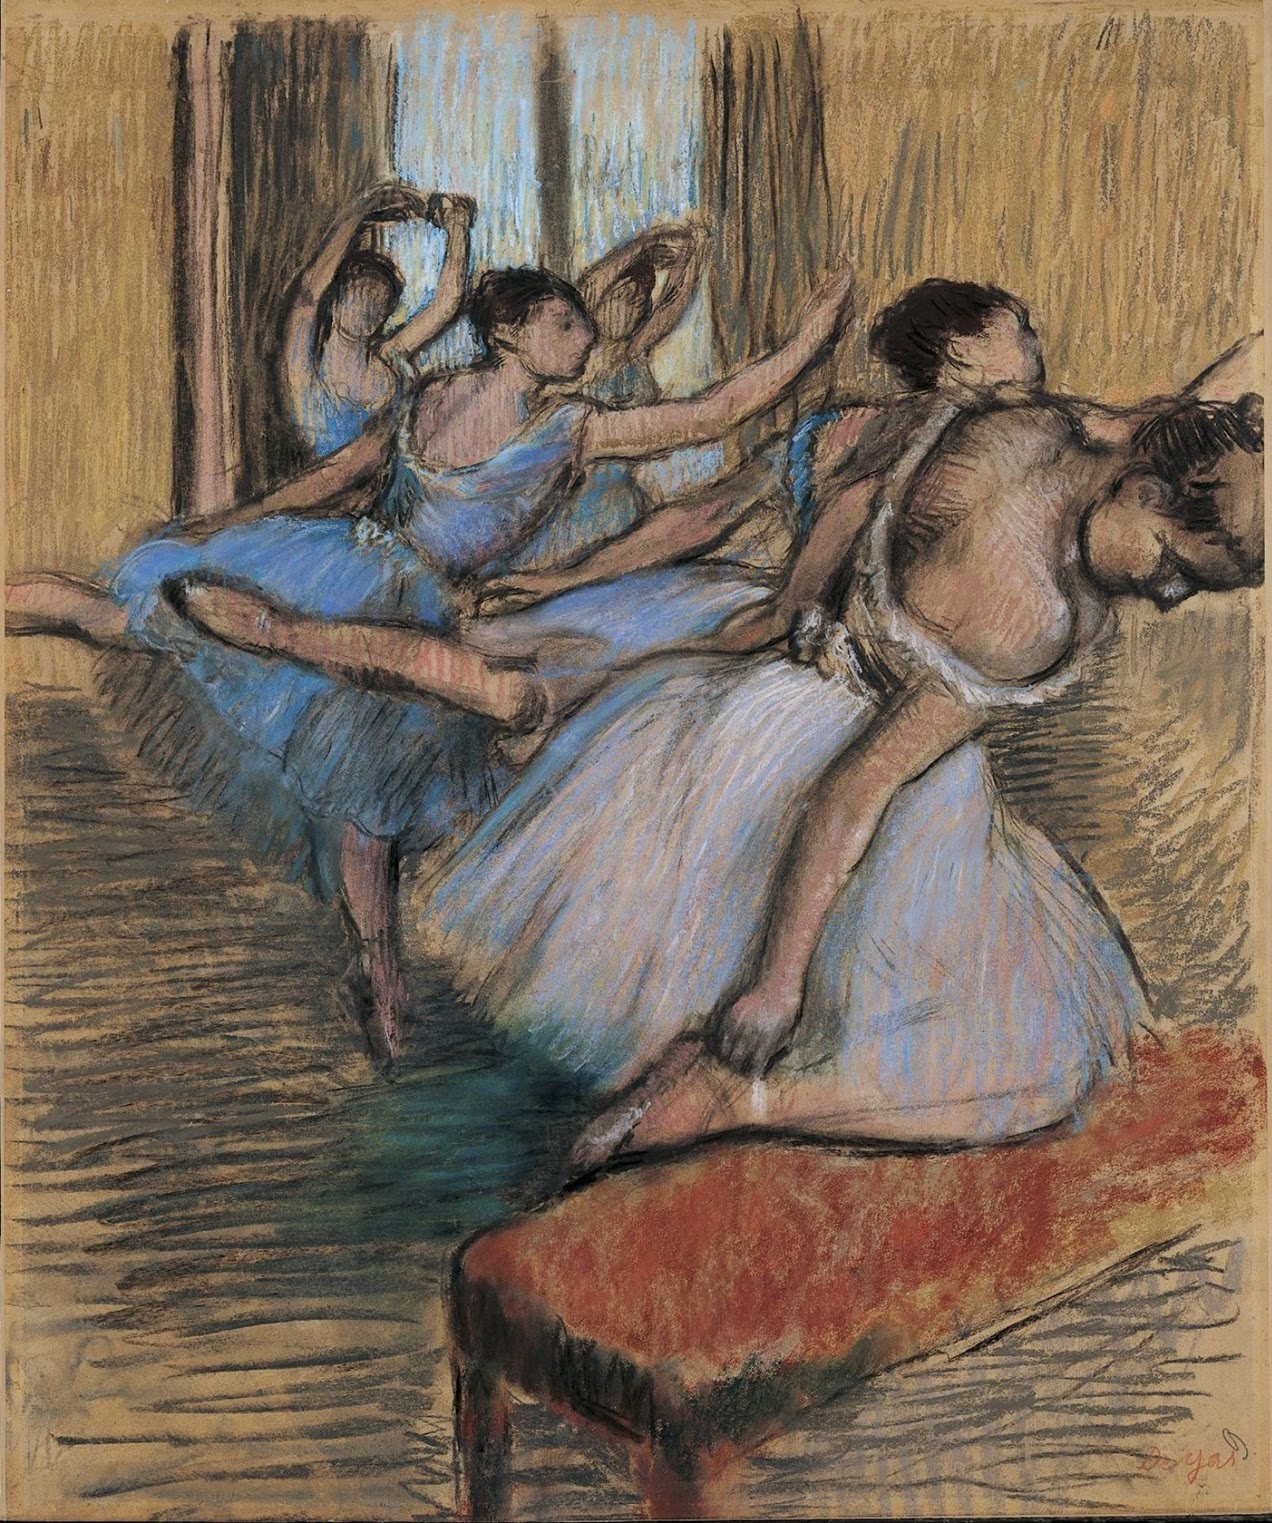 Edgar+Degas-1834-1917 (192).jpg